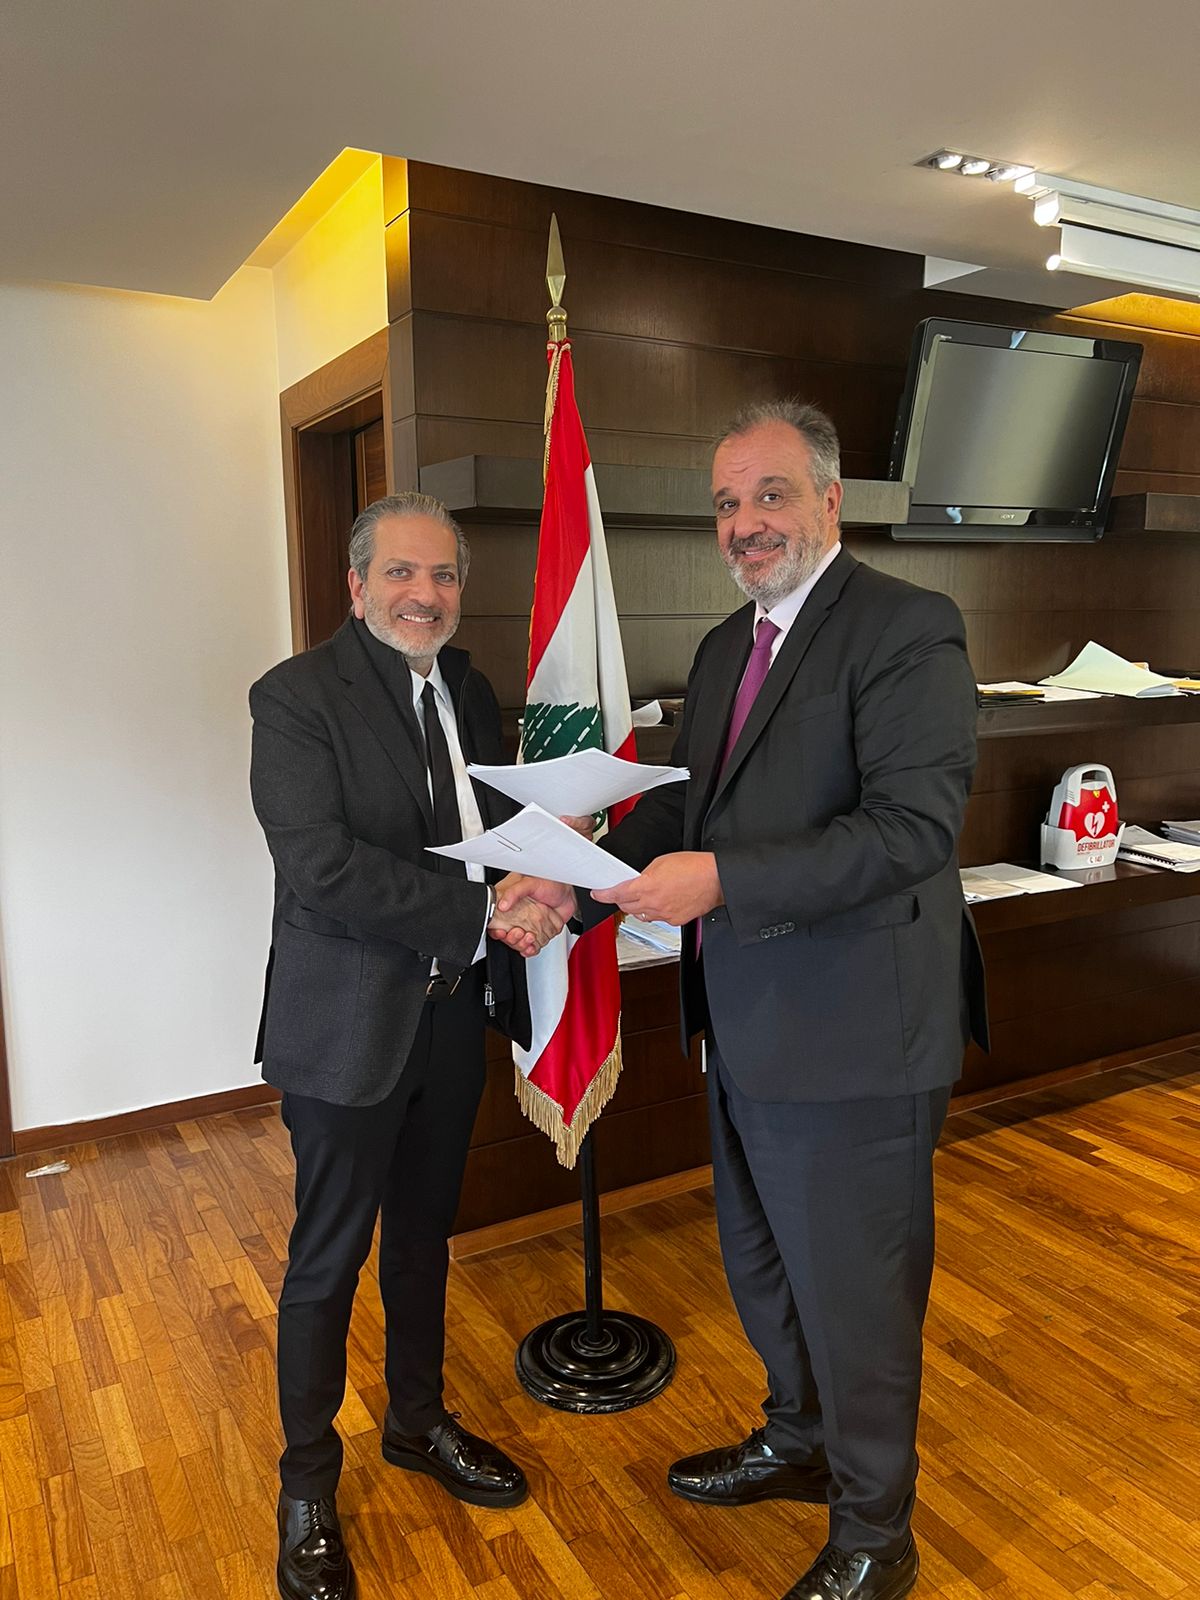 بوشكيان وقّع وشماس اتفاقية تعاون مموّلة من الاتحاد الاوروبي لتحفيز نظام الابتكار في لبنان